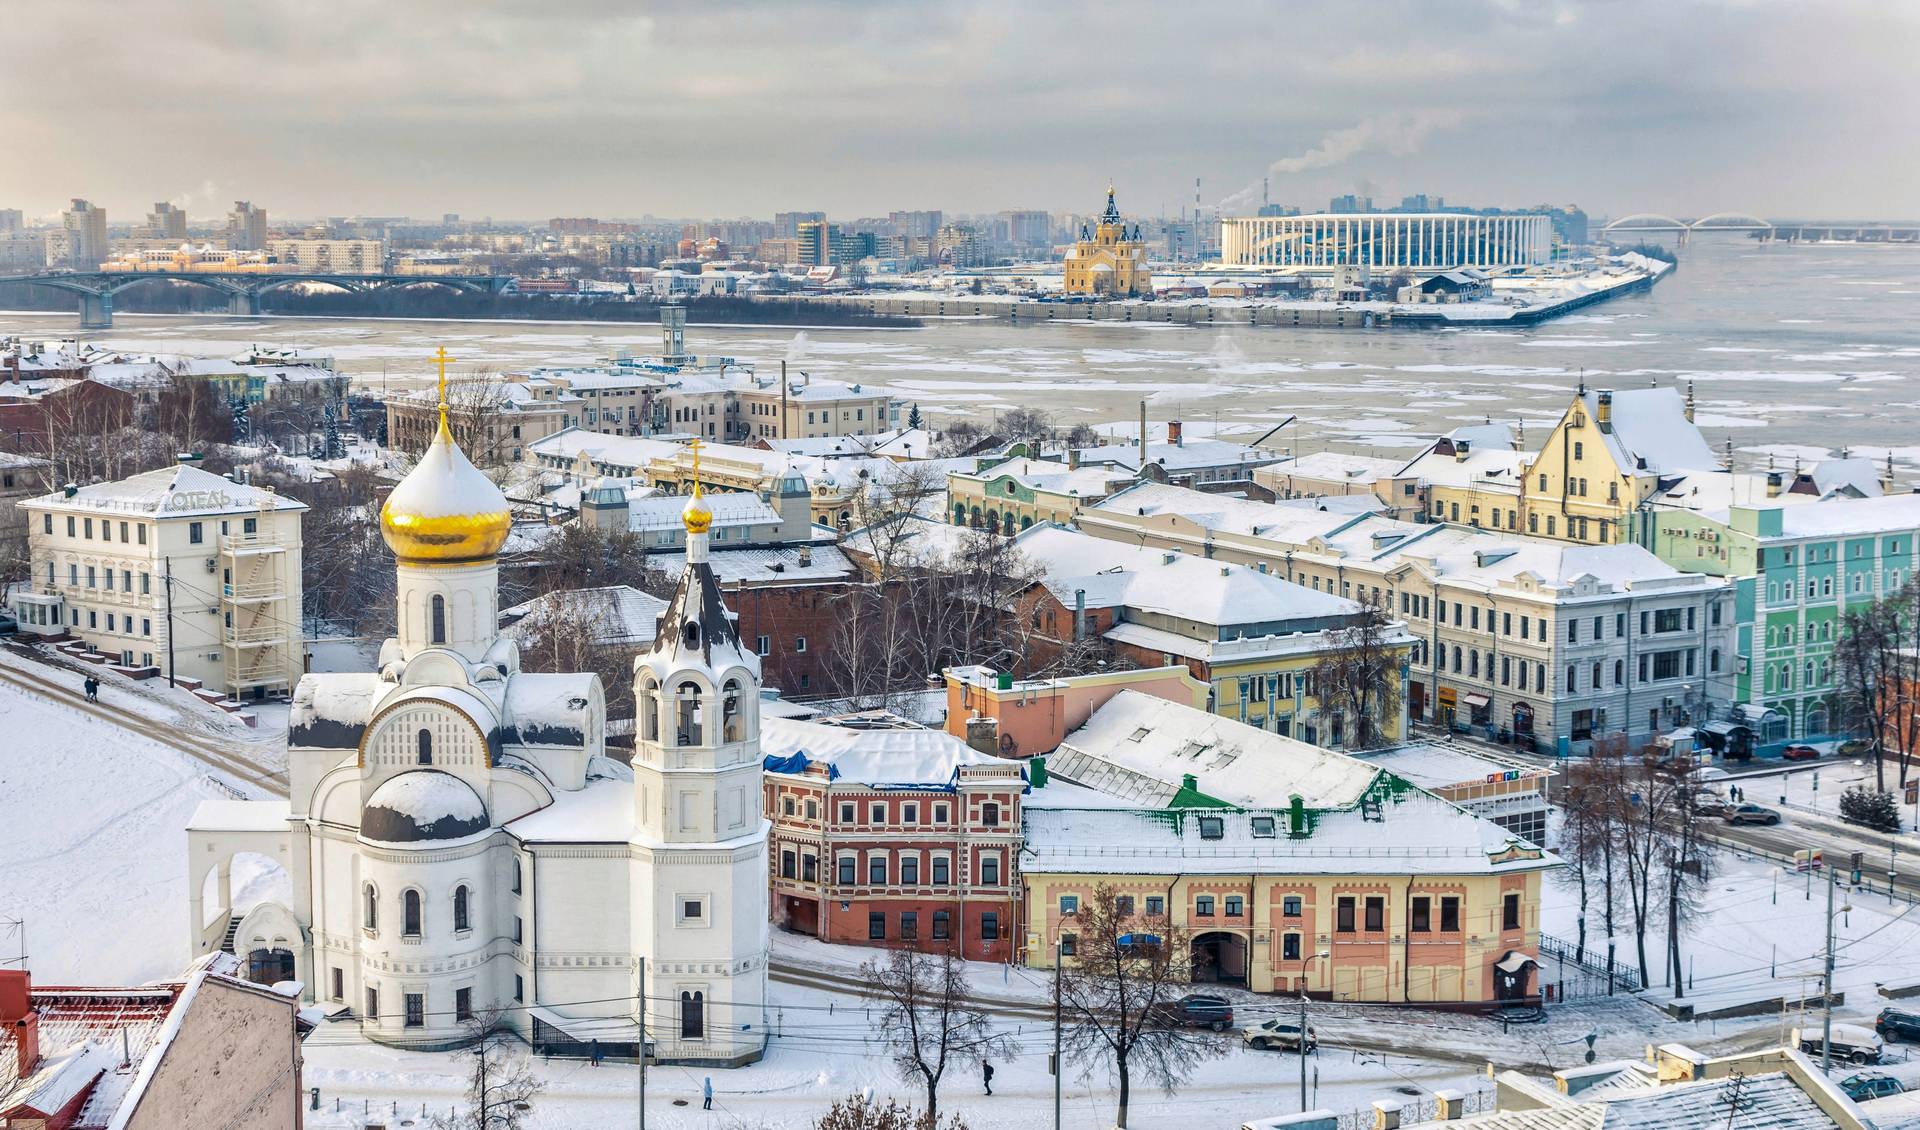 Нижний Новгород в январе: новогодняя сказка